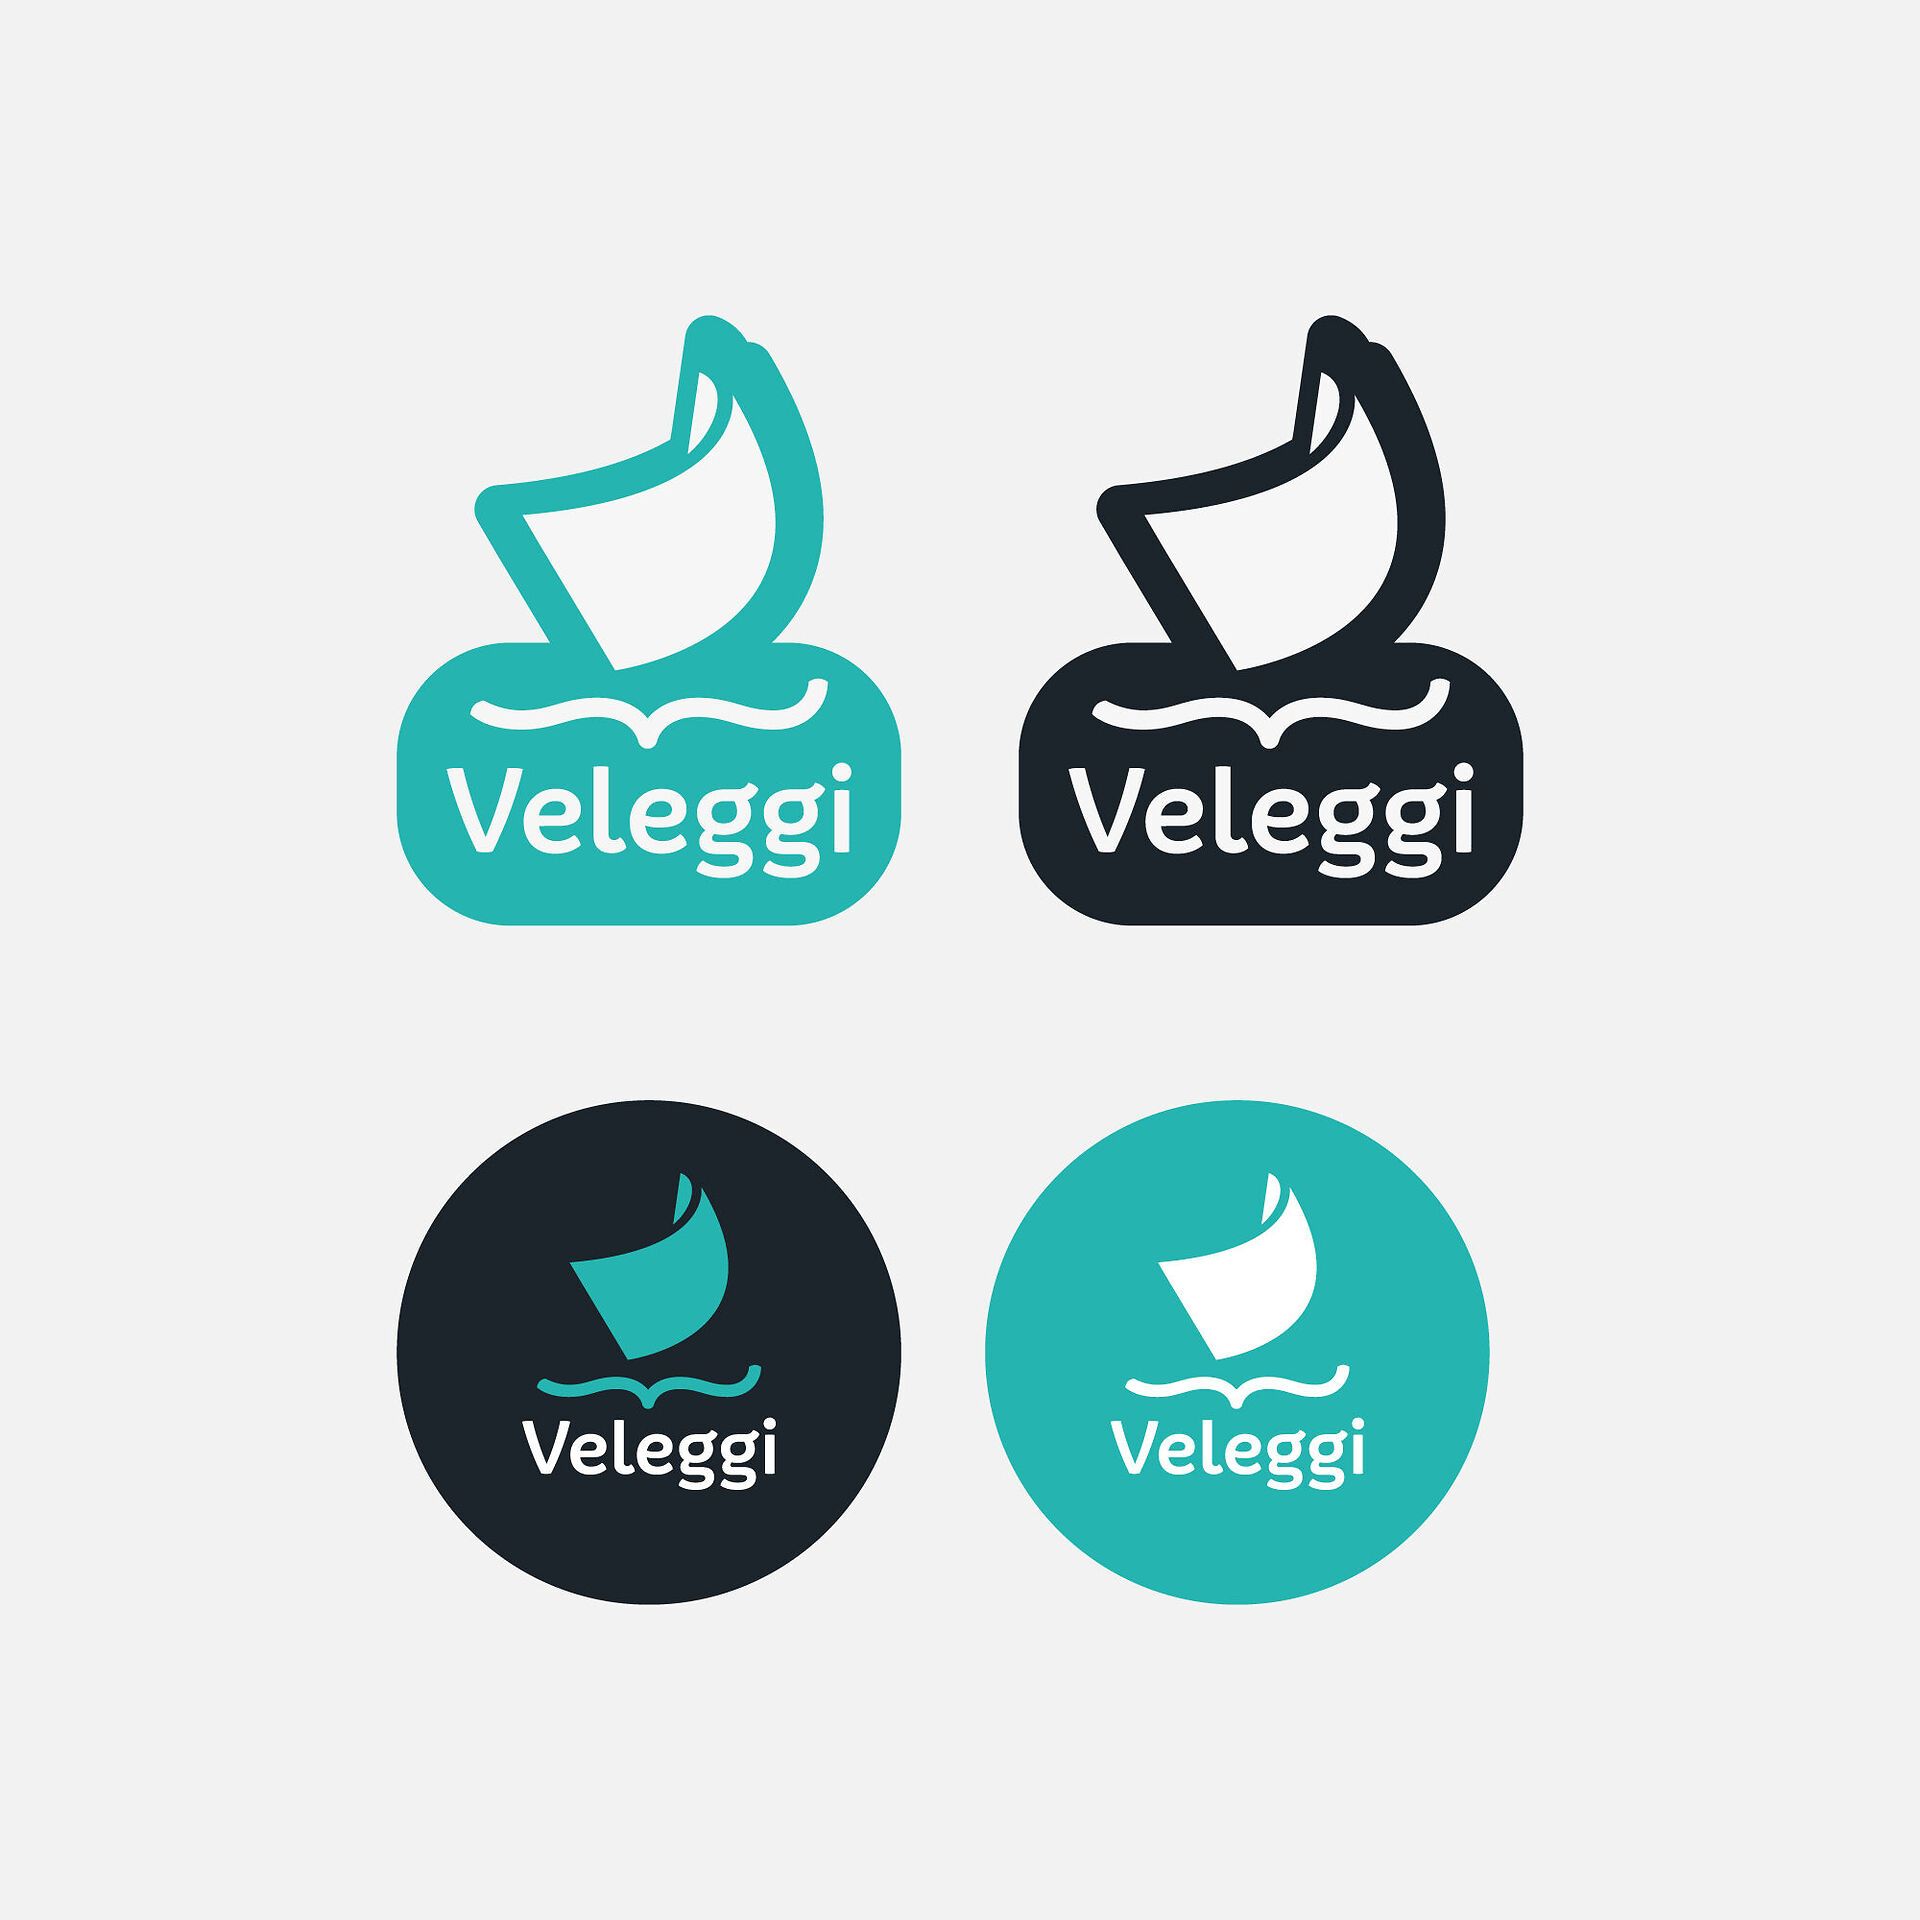 Stickers Veleggi